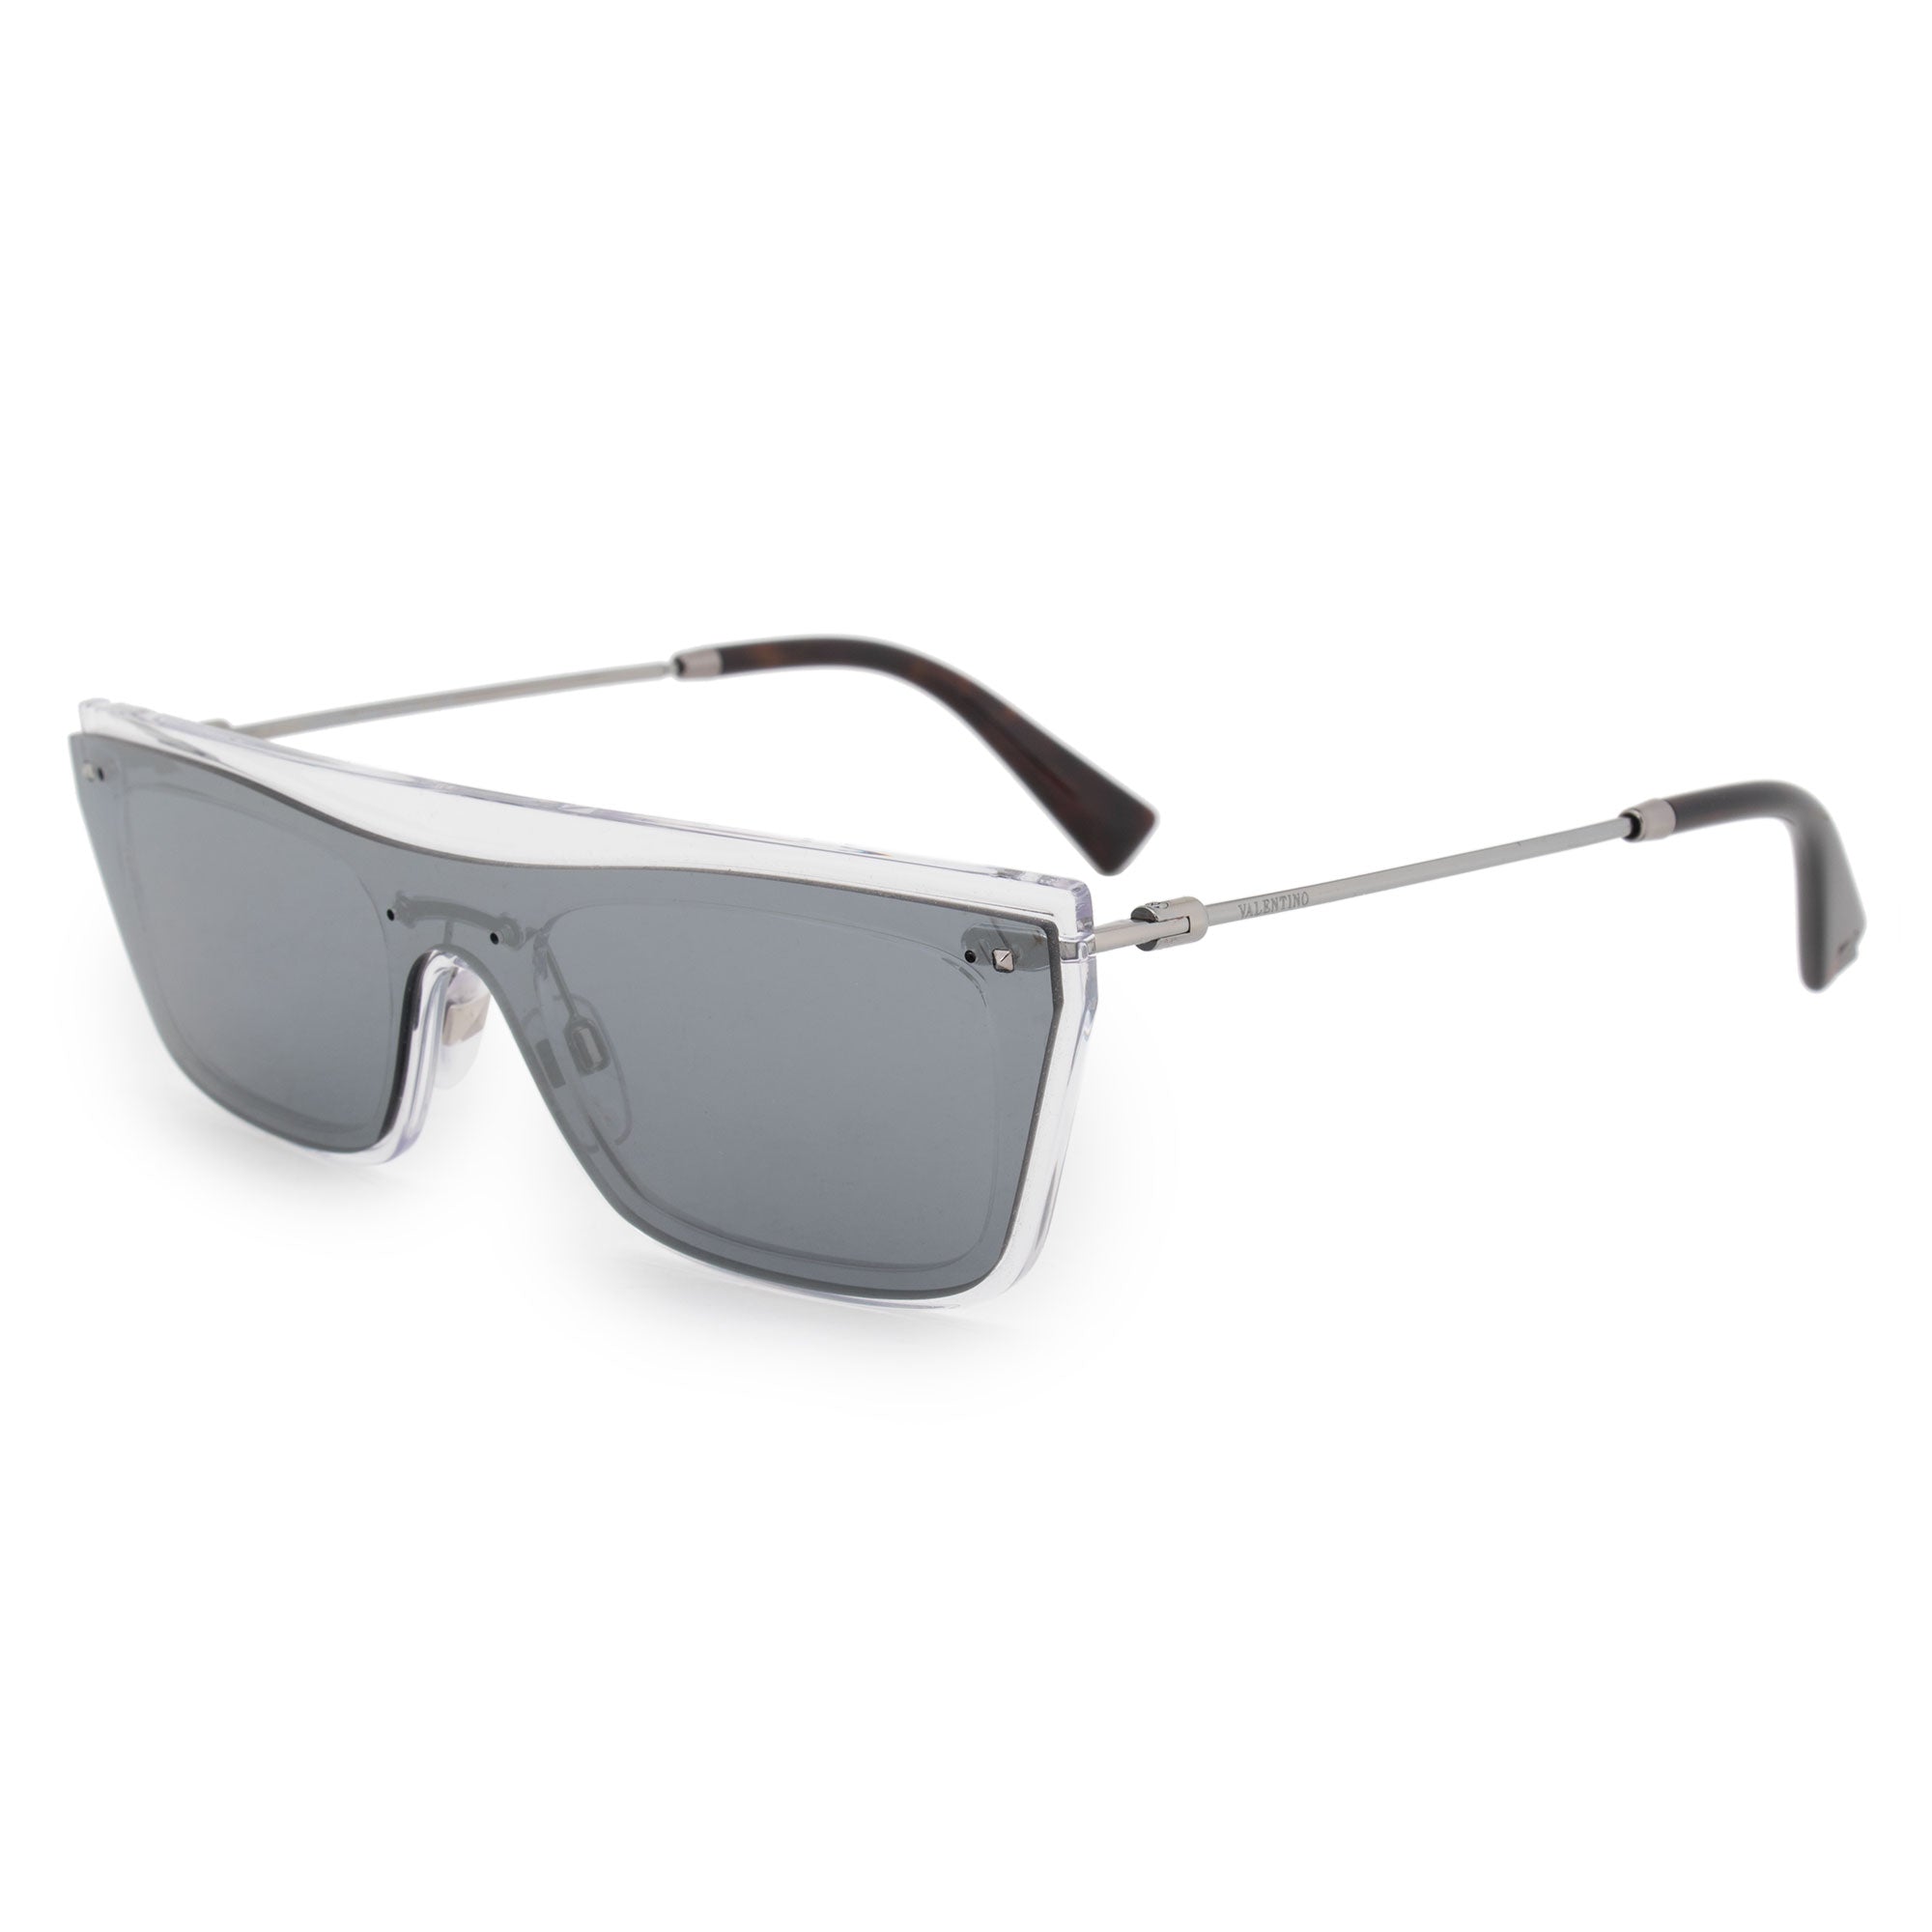 Valentino Single Lens Sunglasses VA4016 50246G 36